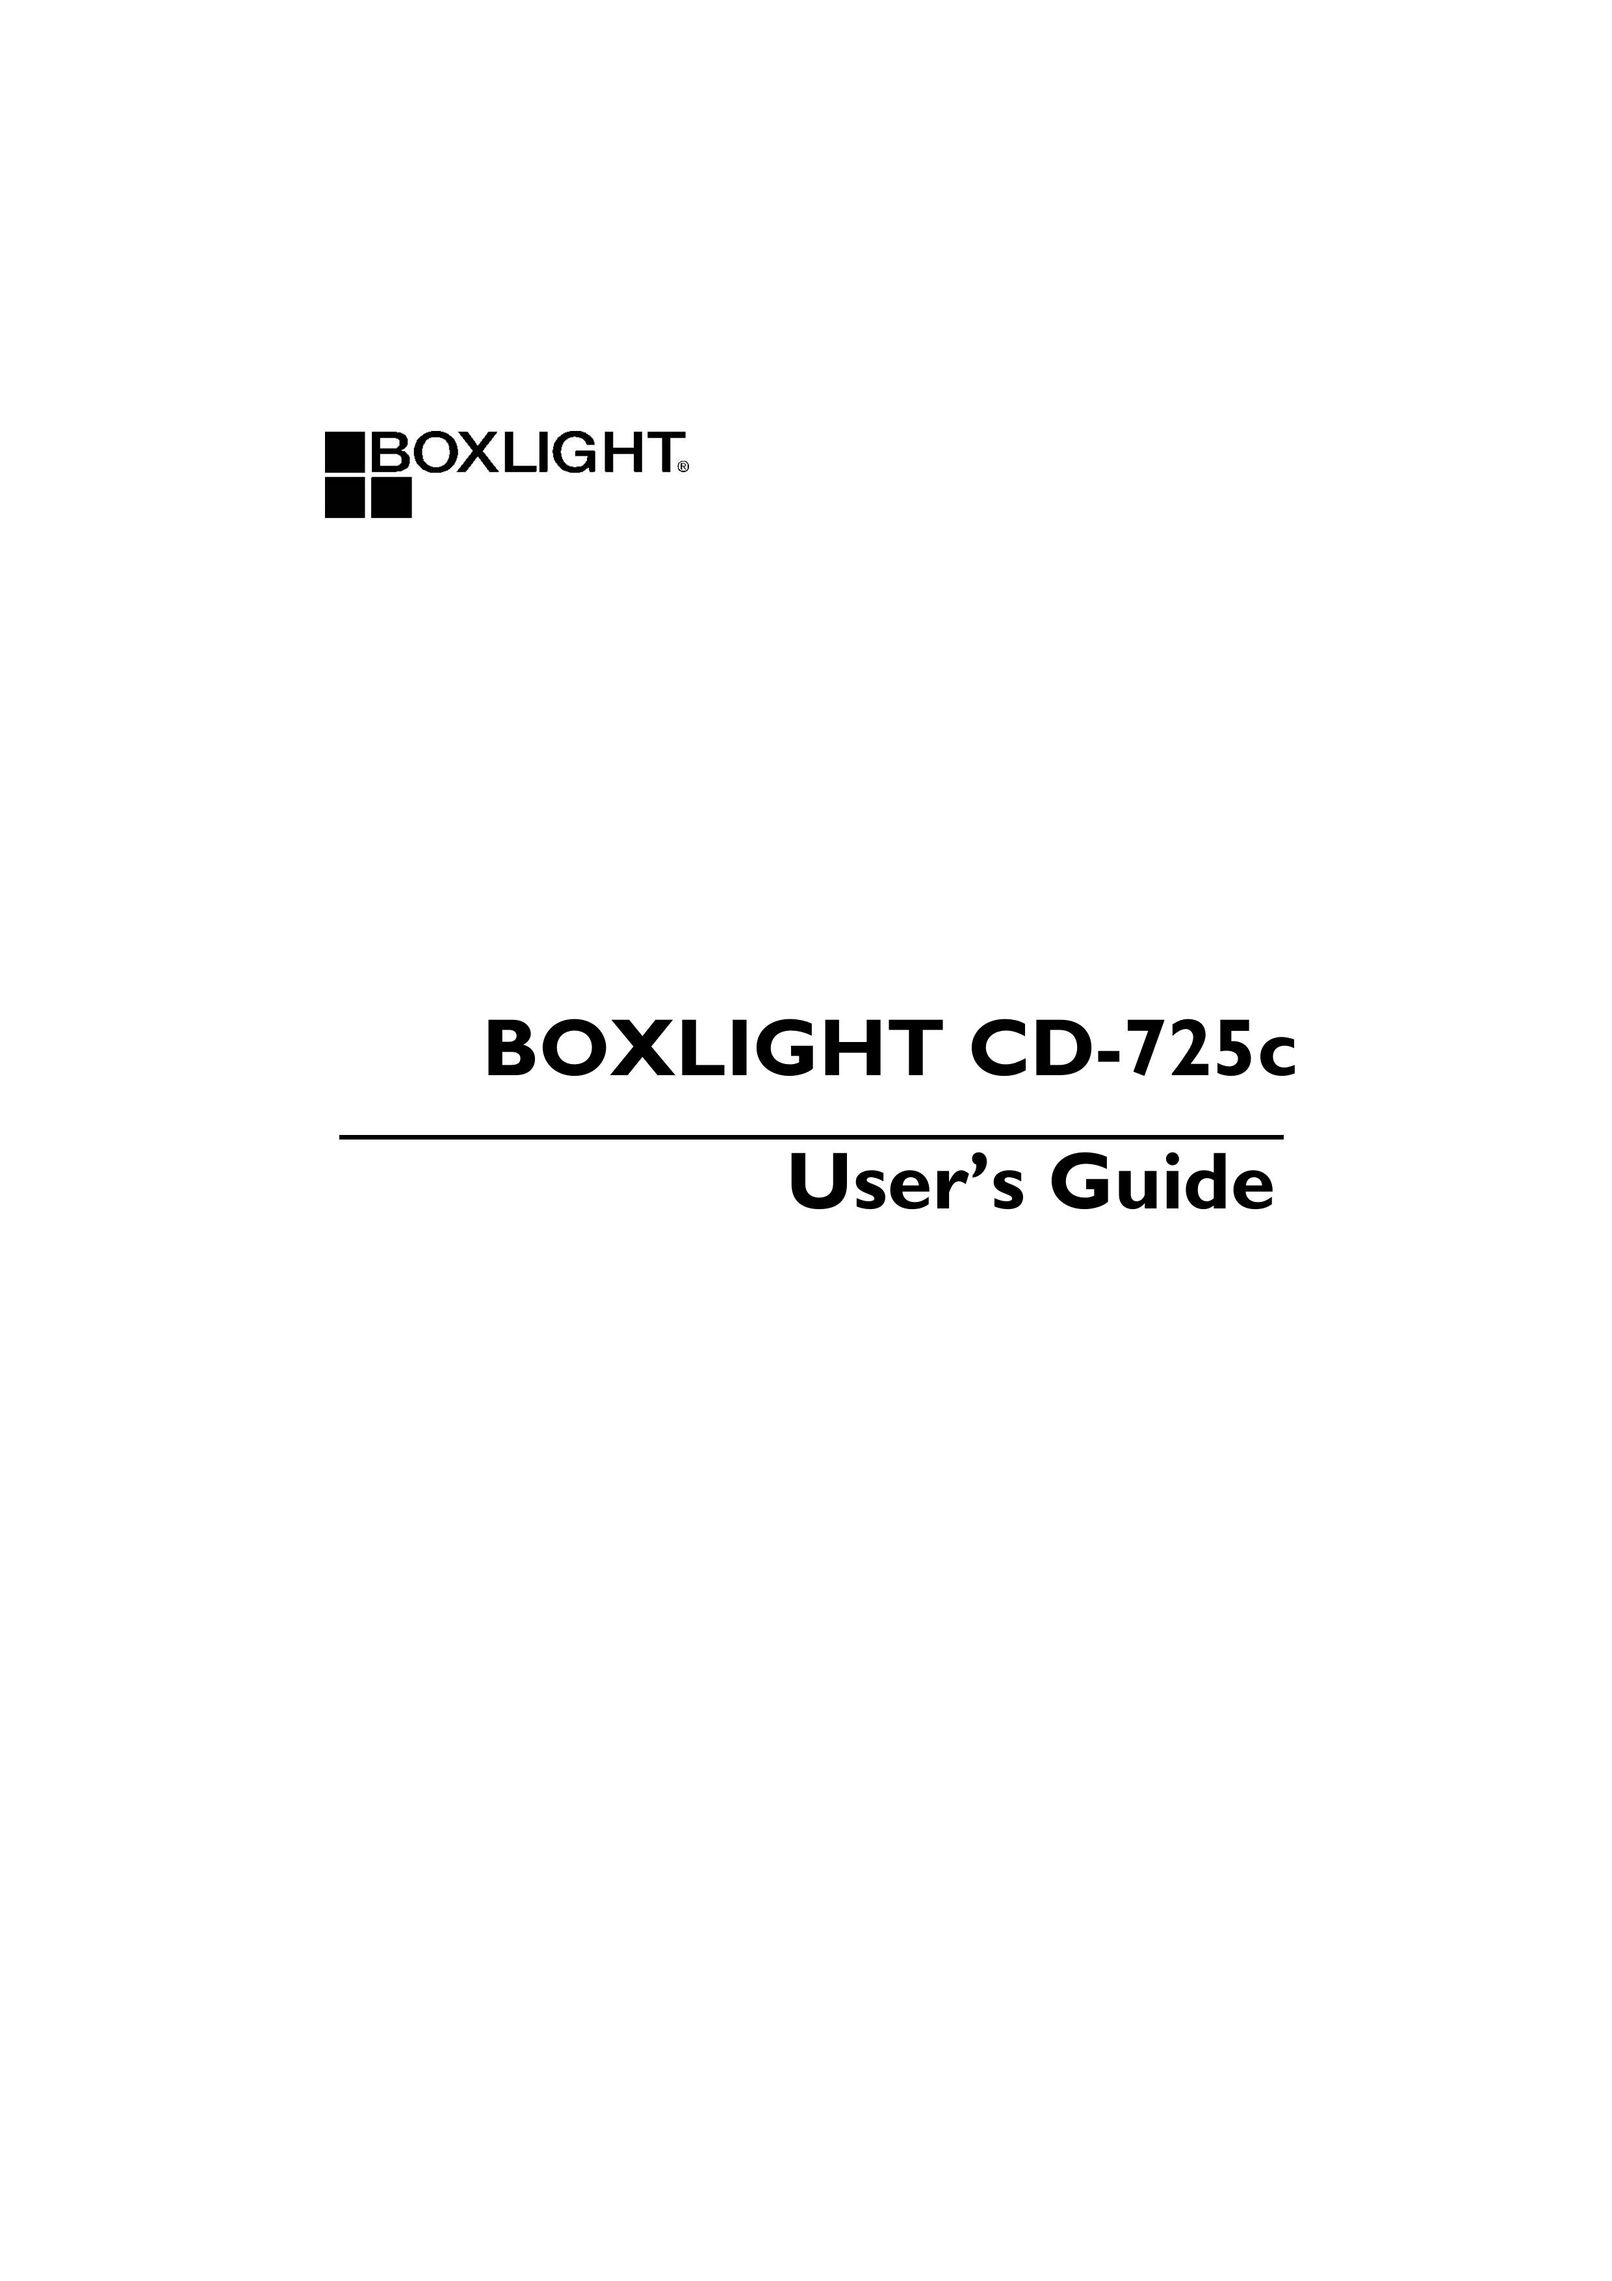 BOXLIGHT CD-725c Projector User Manual